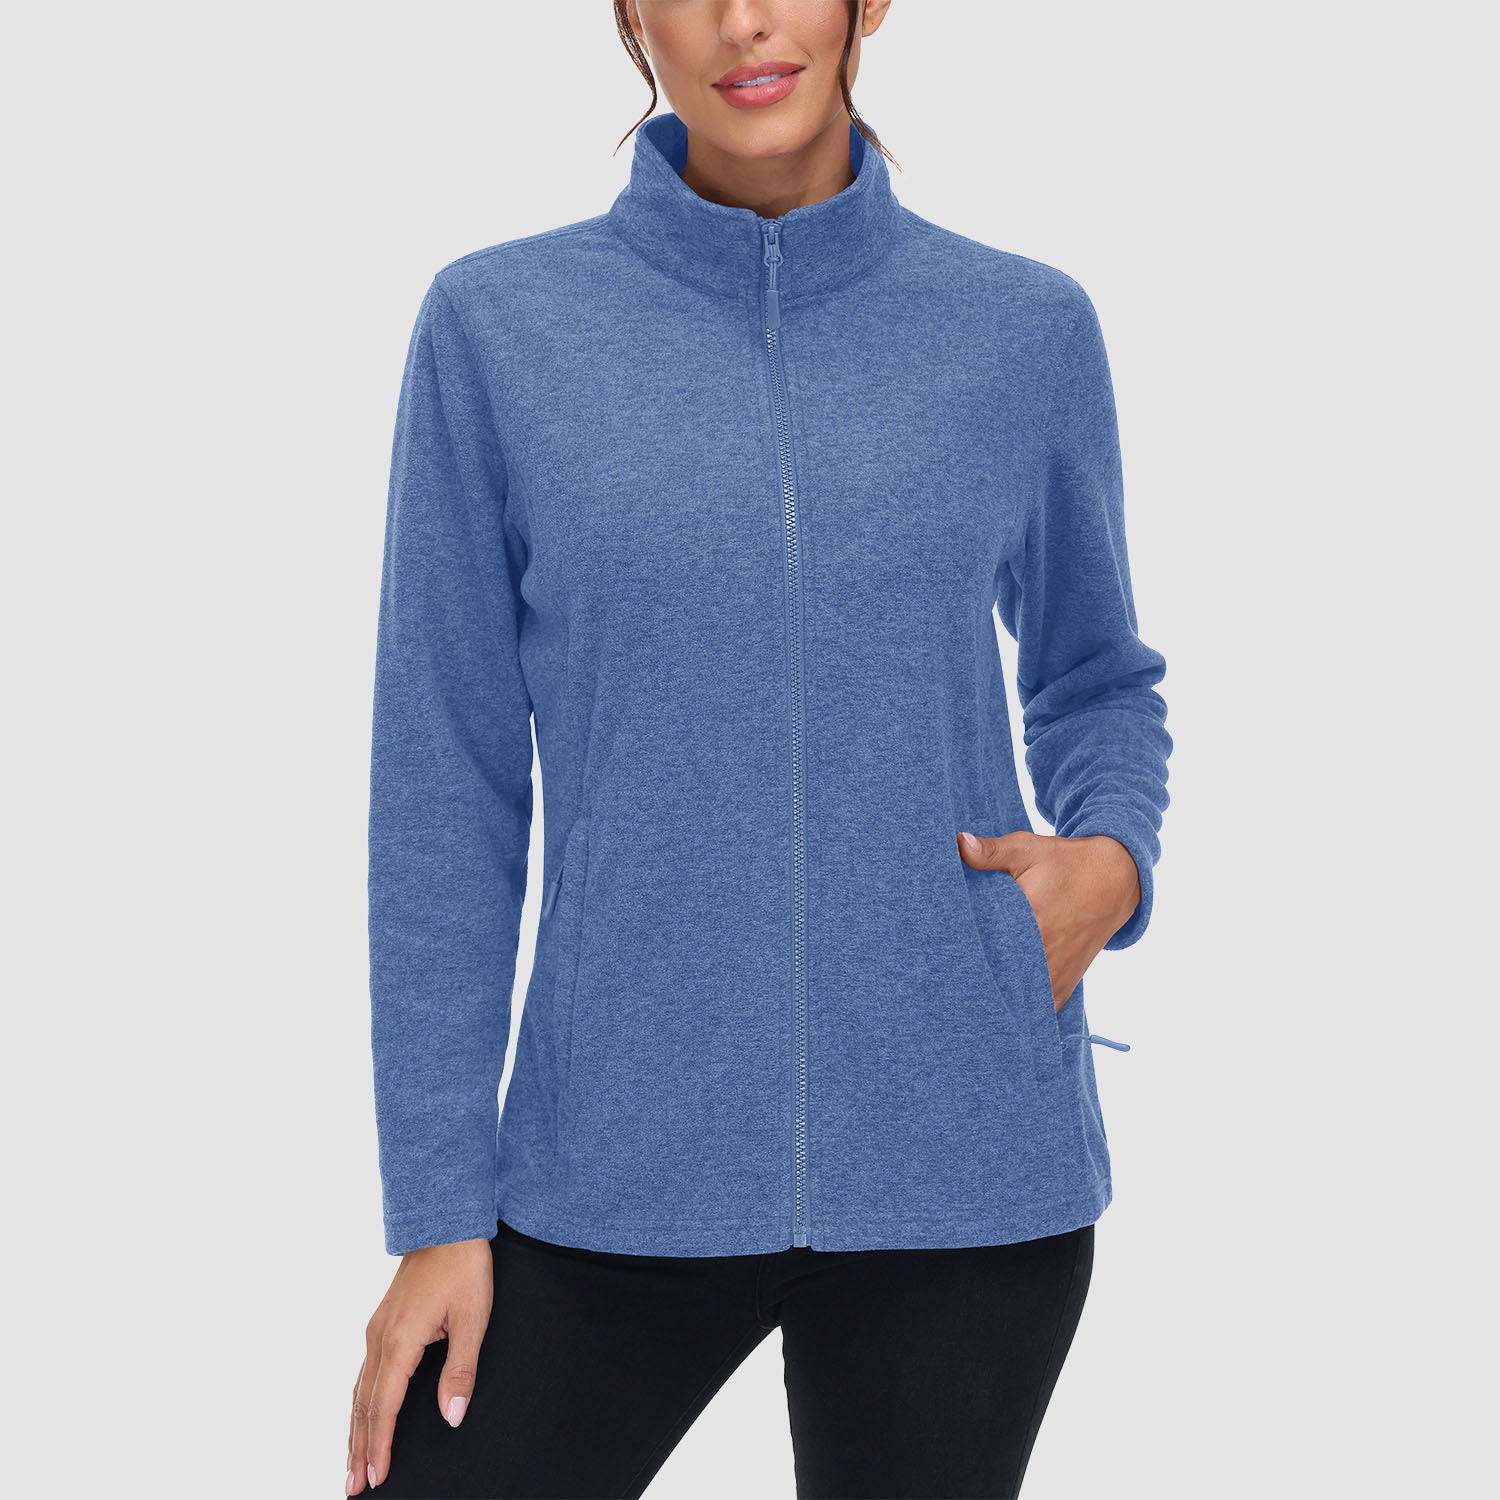 Women's Fleece Jacket Sweater Full Zip Up Coat With Zipper Pockets Warm